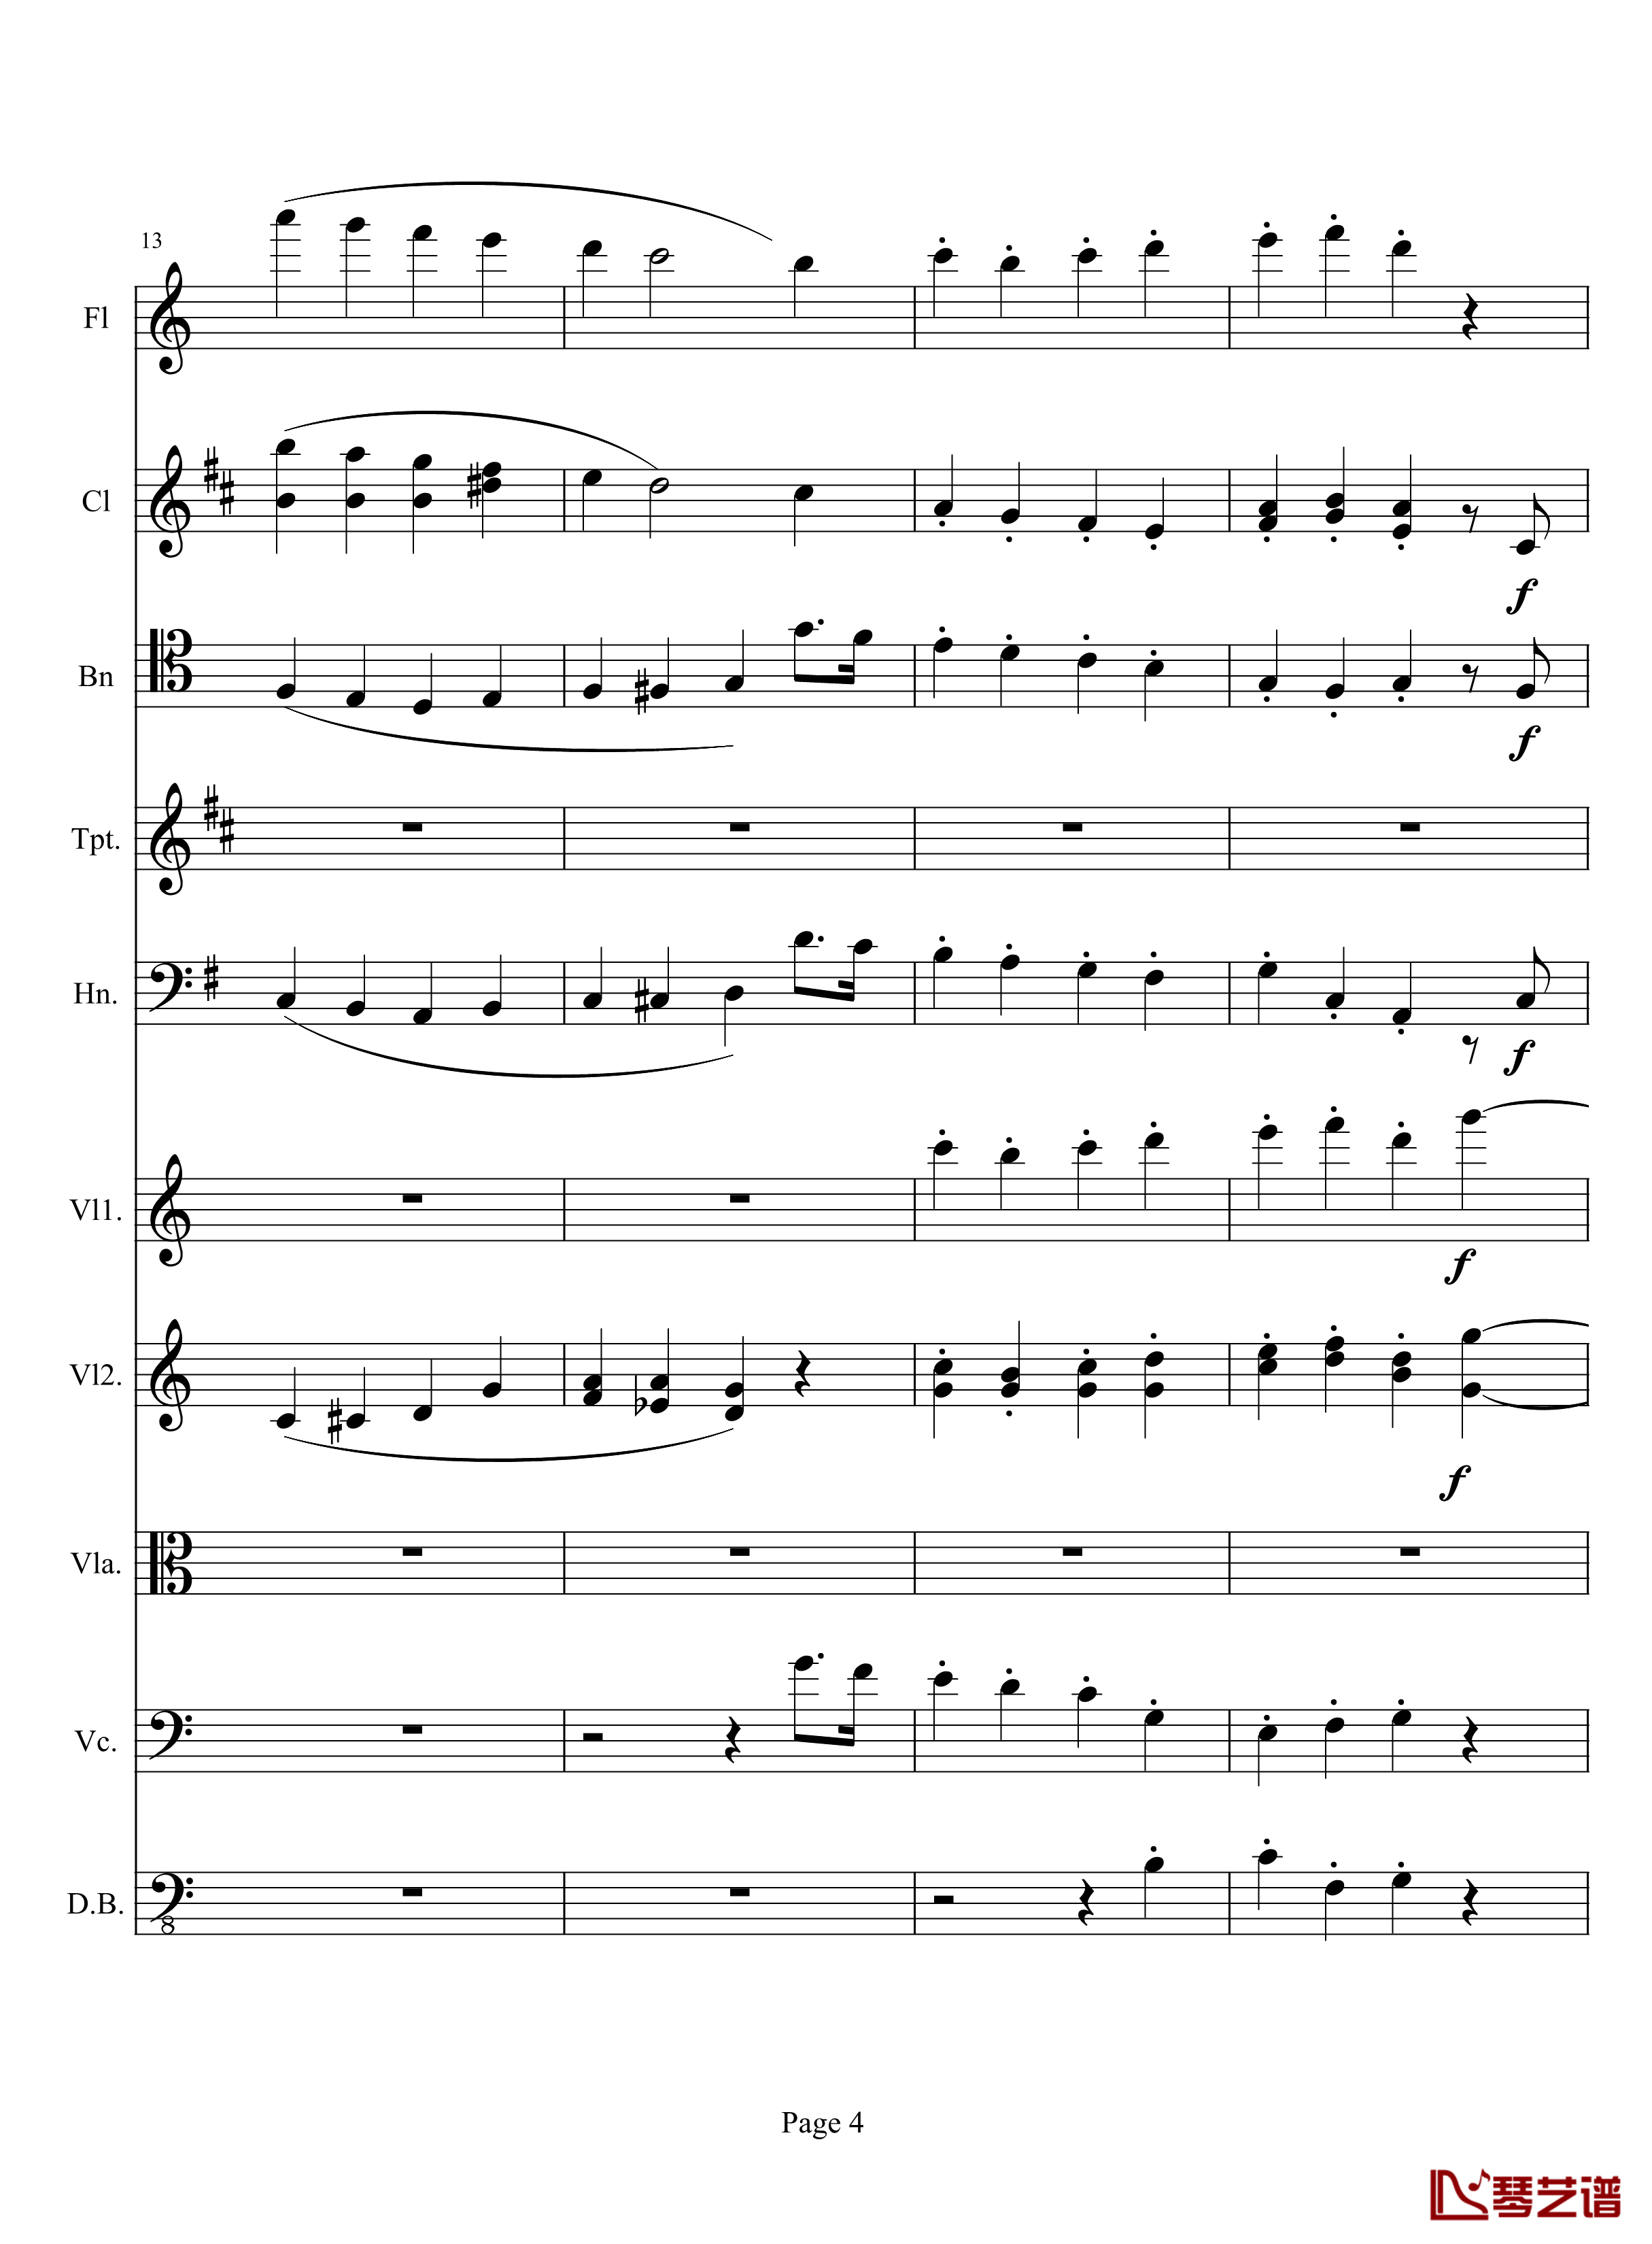 奏鸣曲之交响钢琴谱-第10首-2-贝多芬-beethoven4